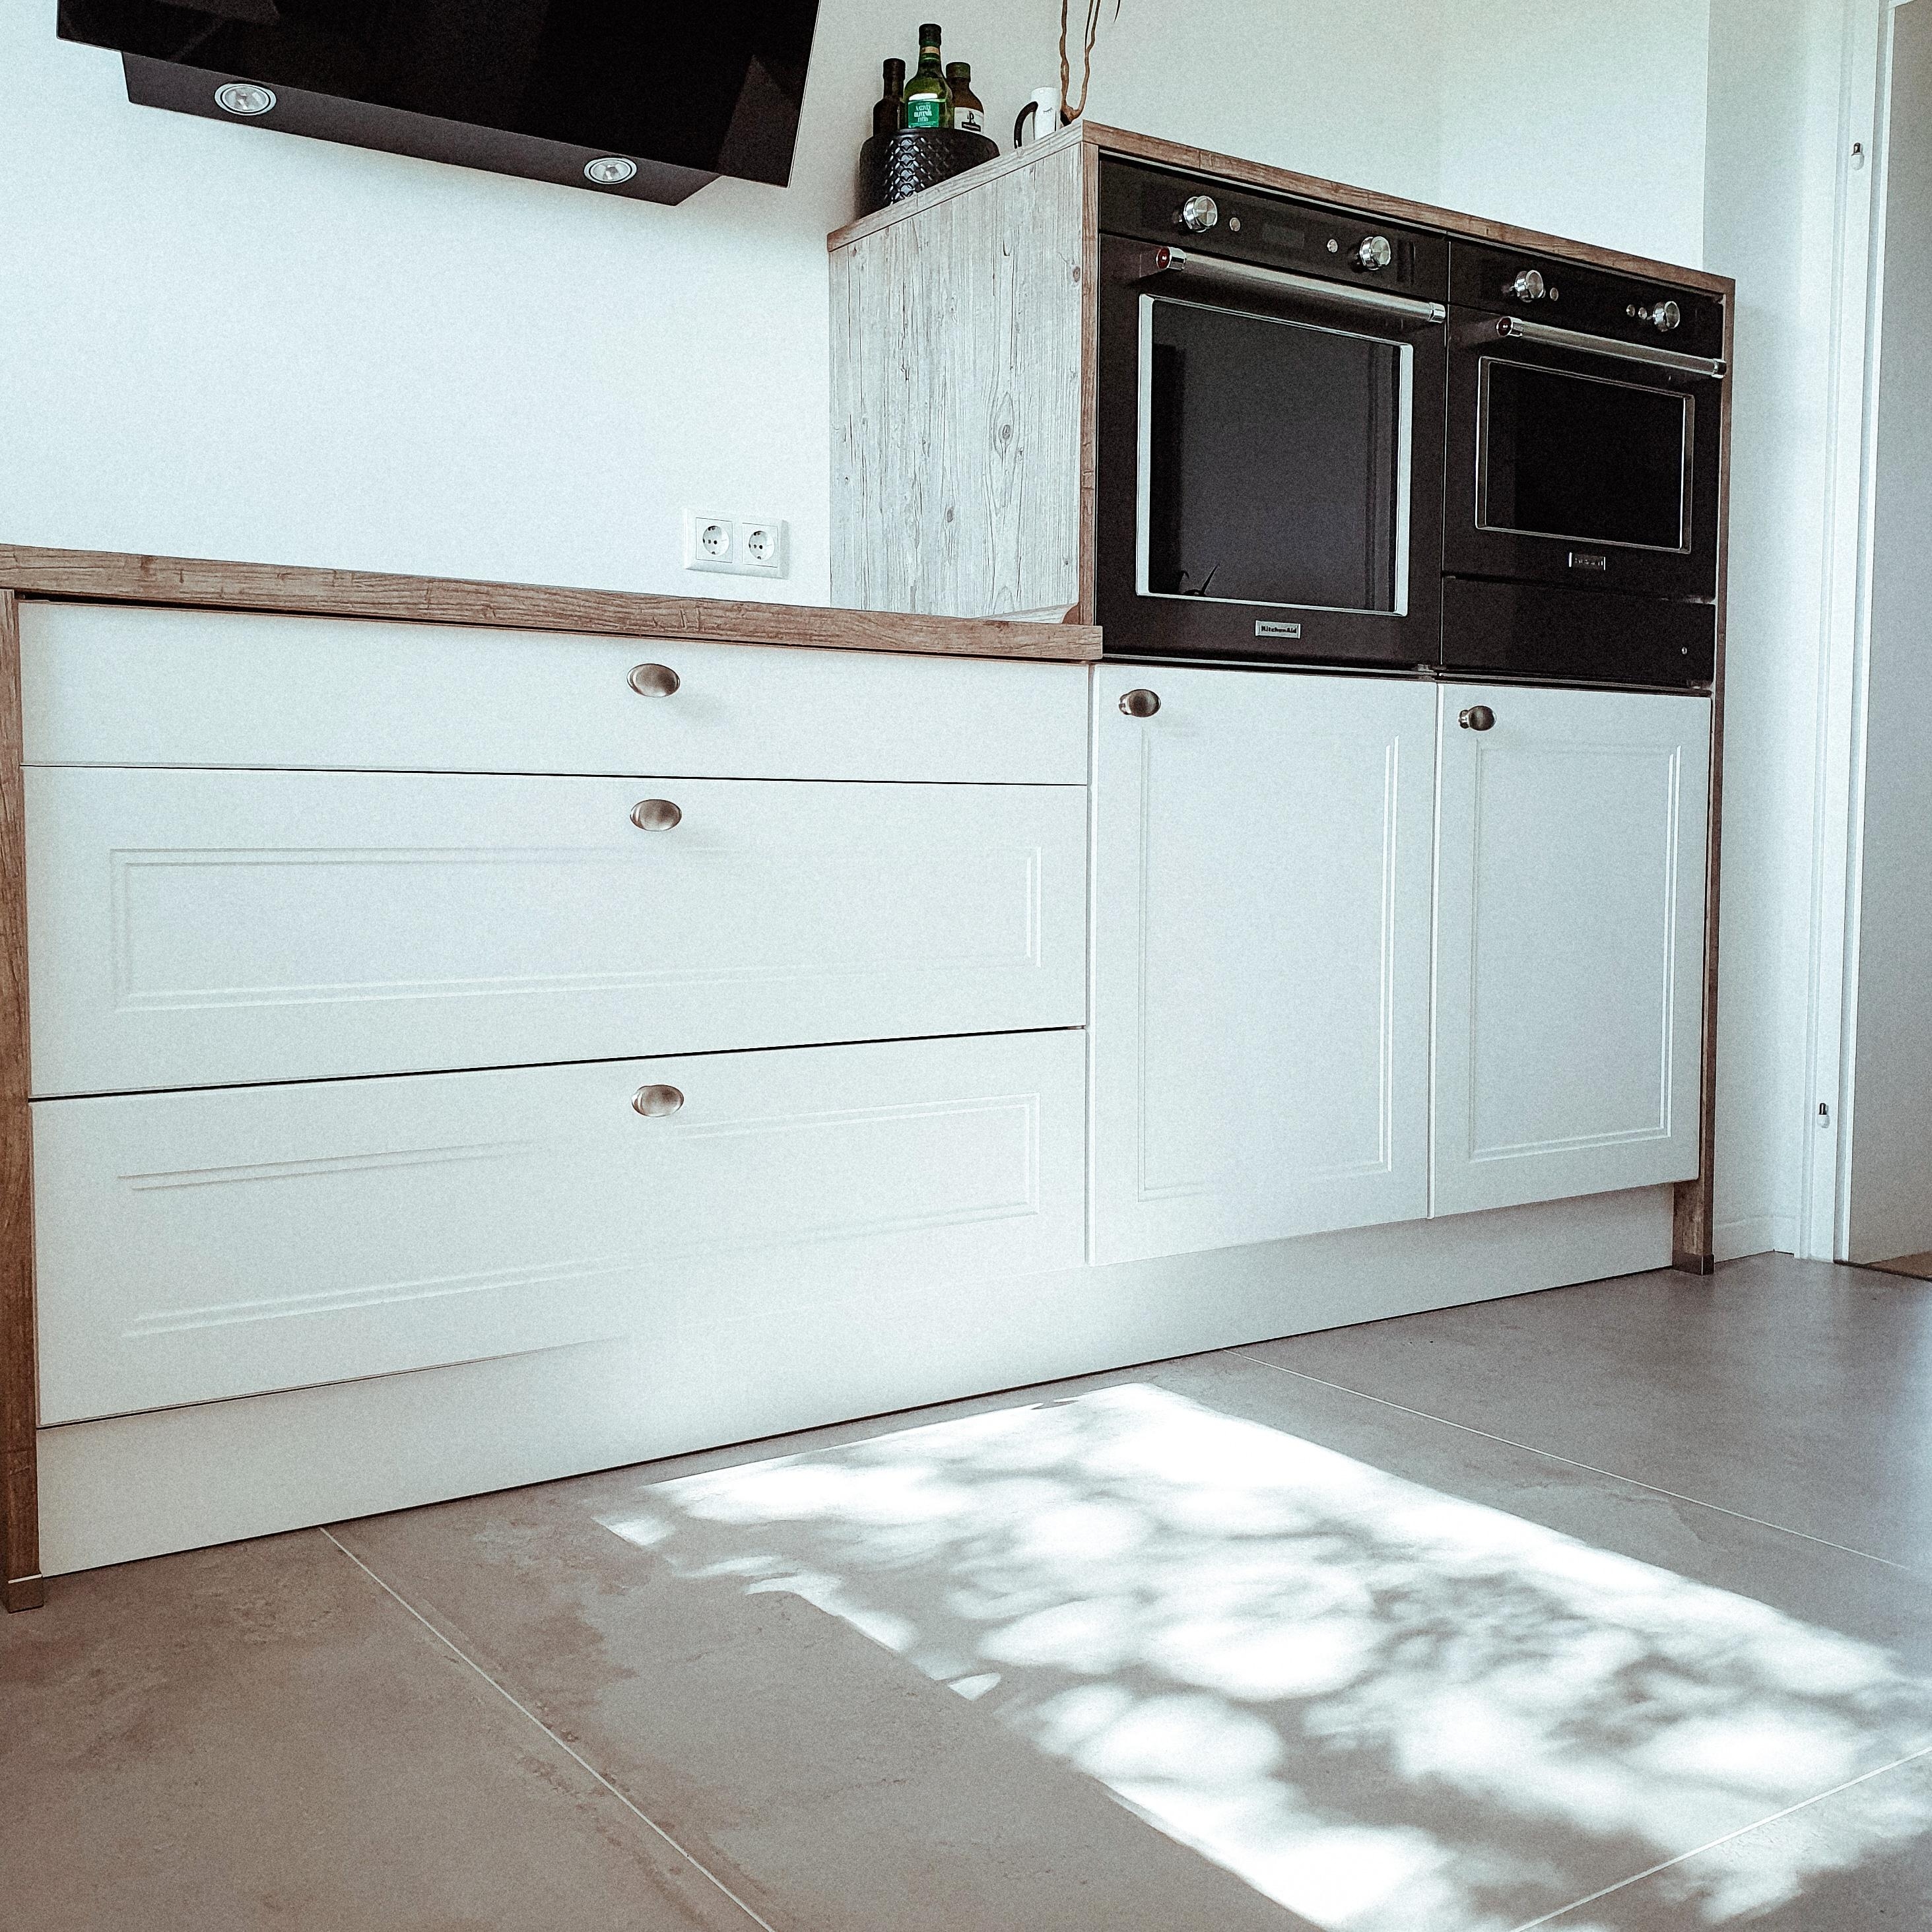 Sunkissed Bodenfliesen 👌🏼🌿
#sunkissed #kitchen 